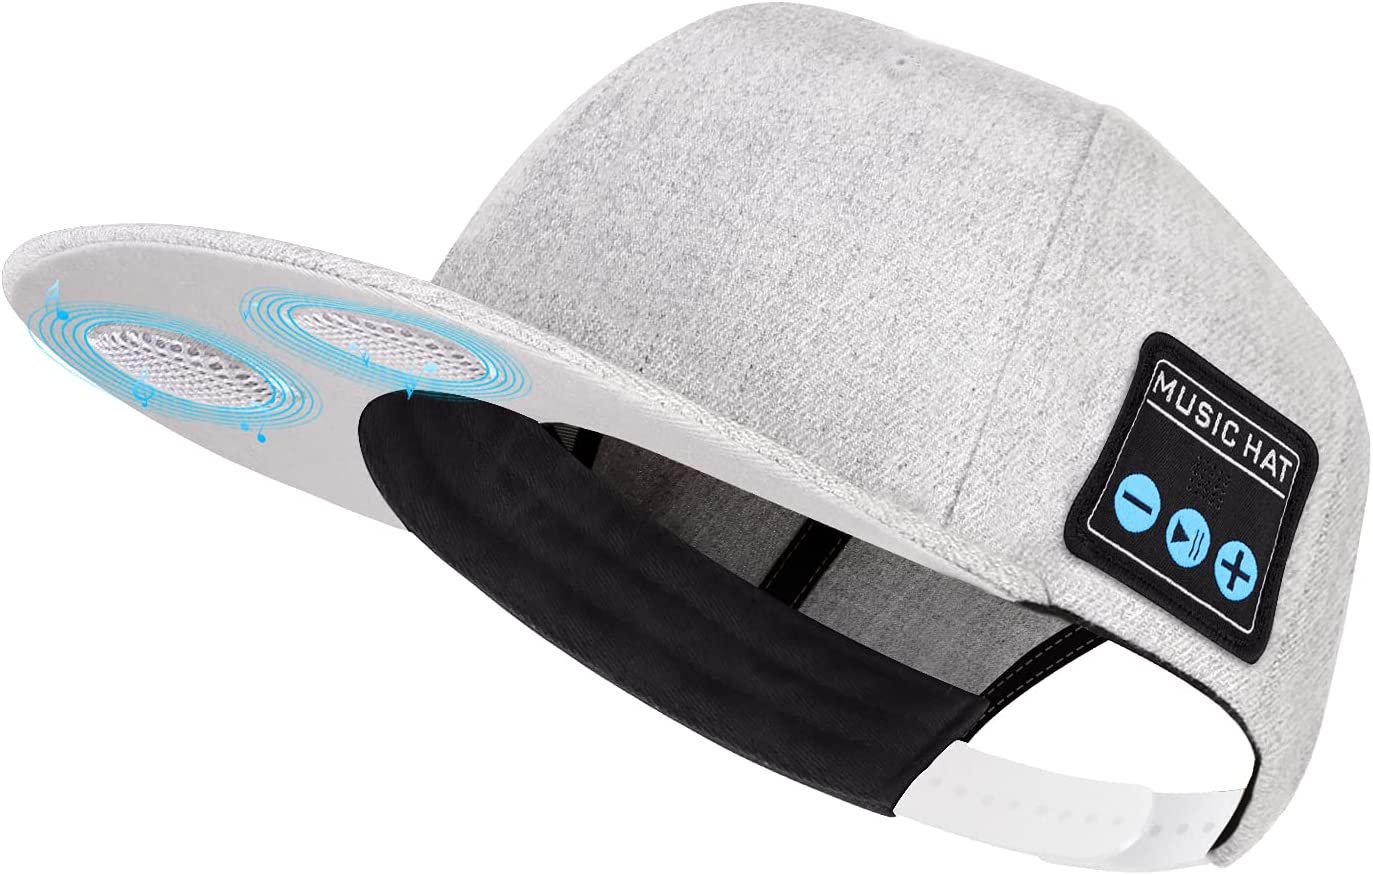 NOUVEAU chapeau avec haut-parleur Bluetooth réglable Bluetooth chapeau sans fil haut-parleur intelligent casquette pour Sport de plein air casquette de Baseball avec micro